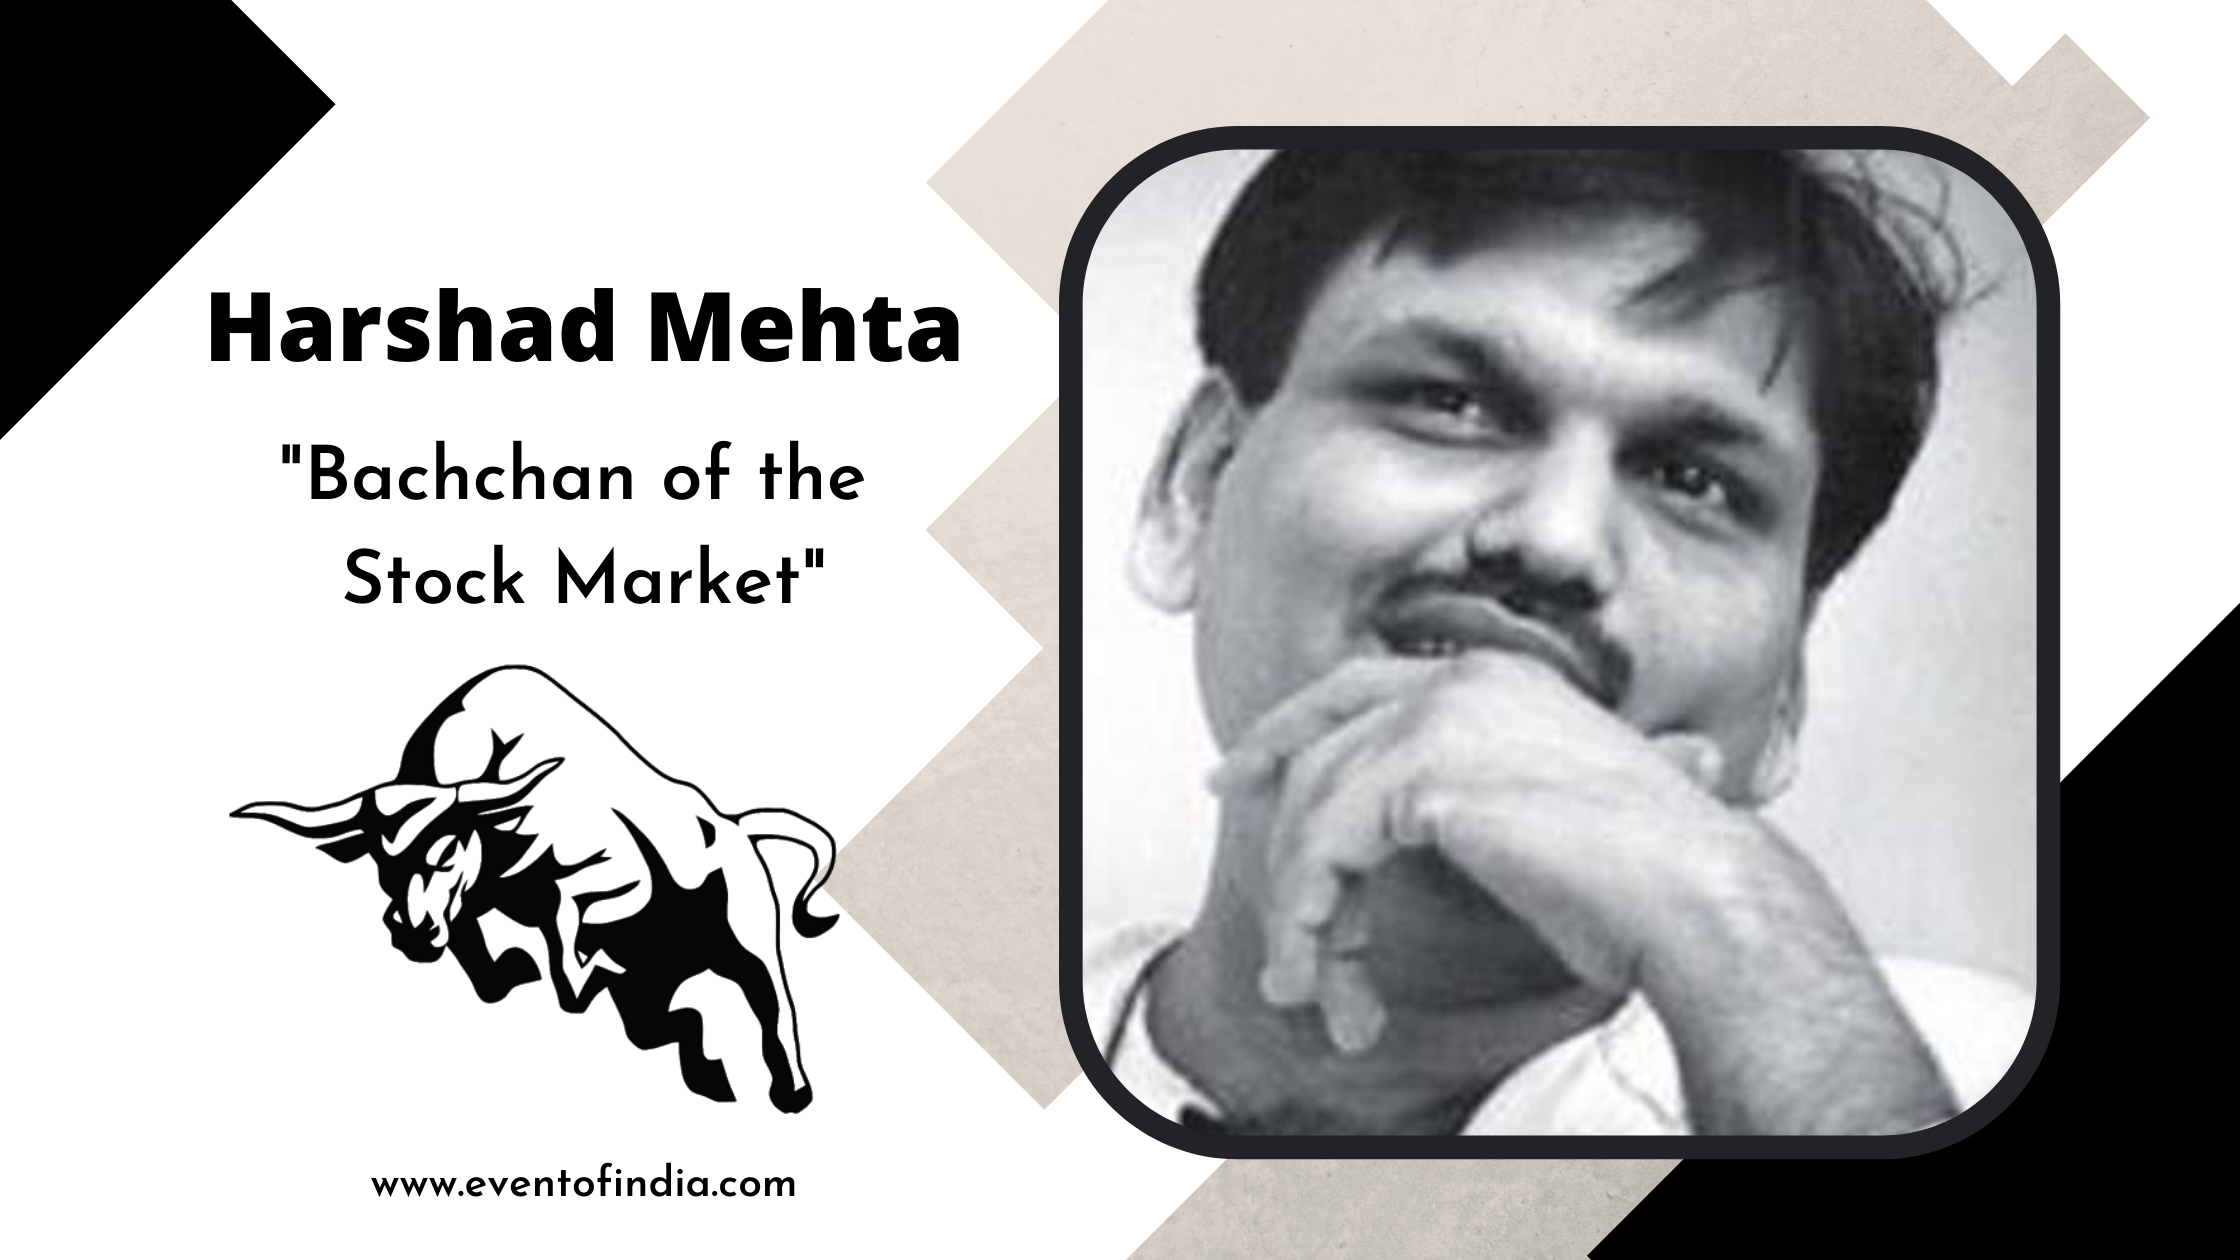 Harshad Mehta: was he a BIG BULL?